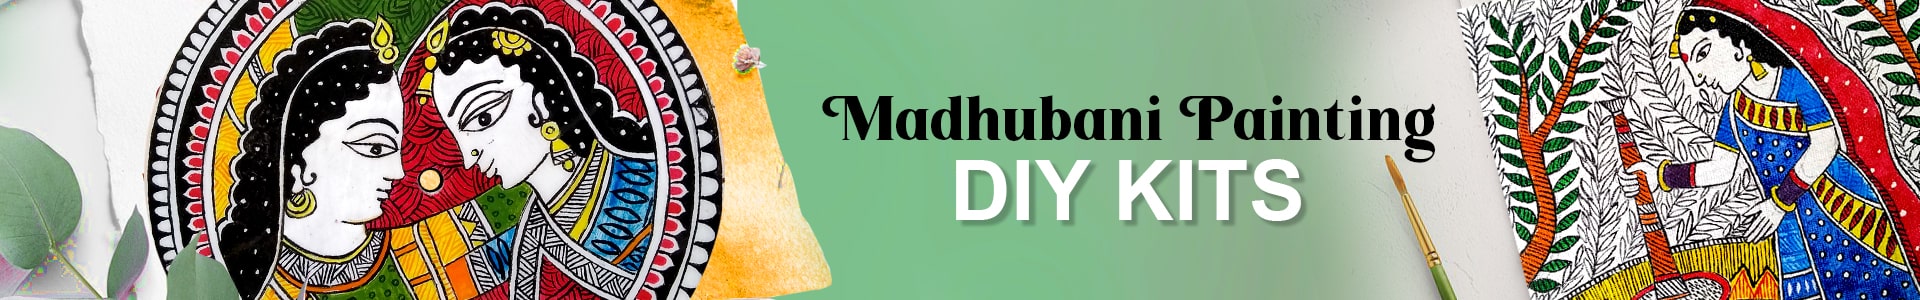 Madhubani Hobbyist